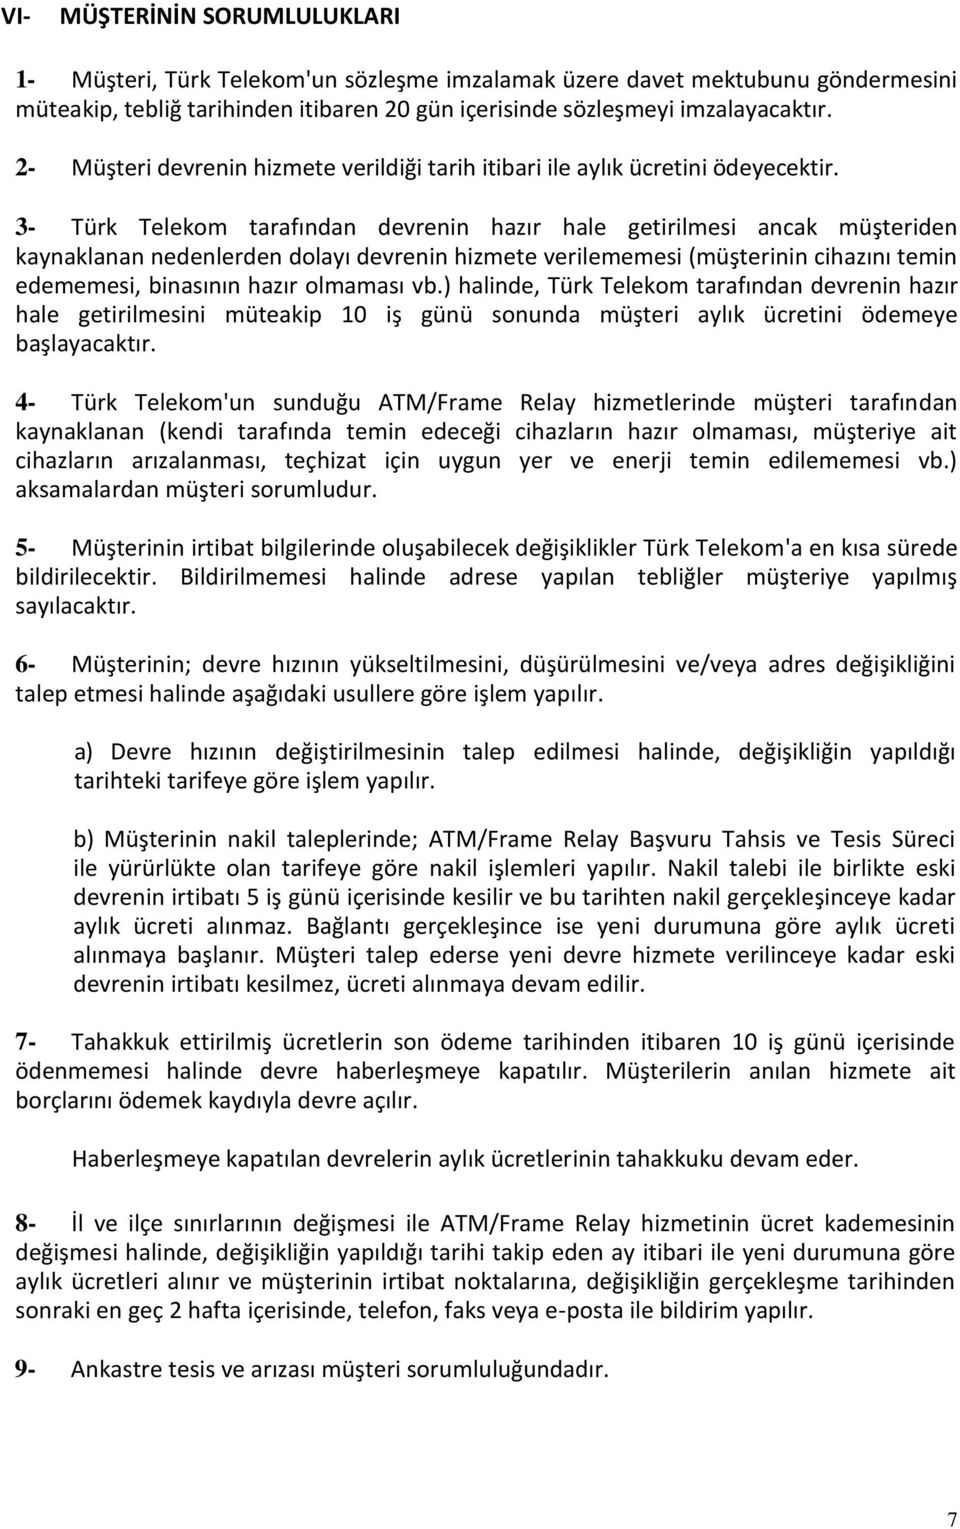 3- Türk Telekom tarafından devrenin hazır hale getirilmesi ancak müşteriden kaynaklanan nedenlerden dolayı devrenin hizmete verilememesi (müşterinin cihazını temin edememesi, binasının hazır olmaması